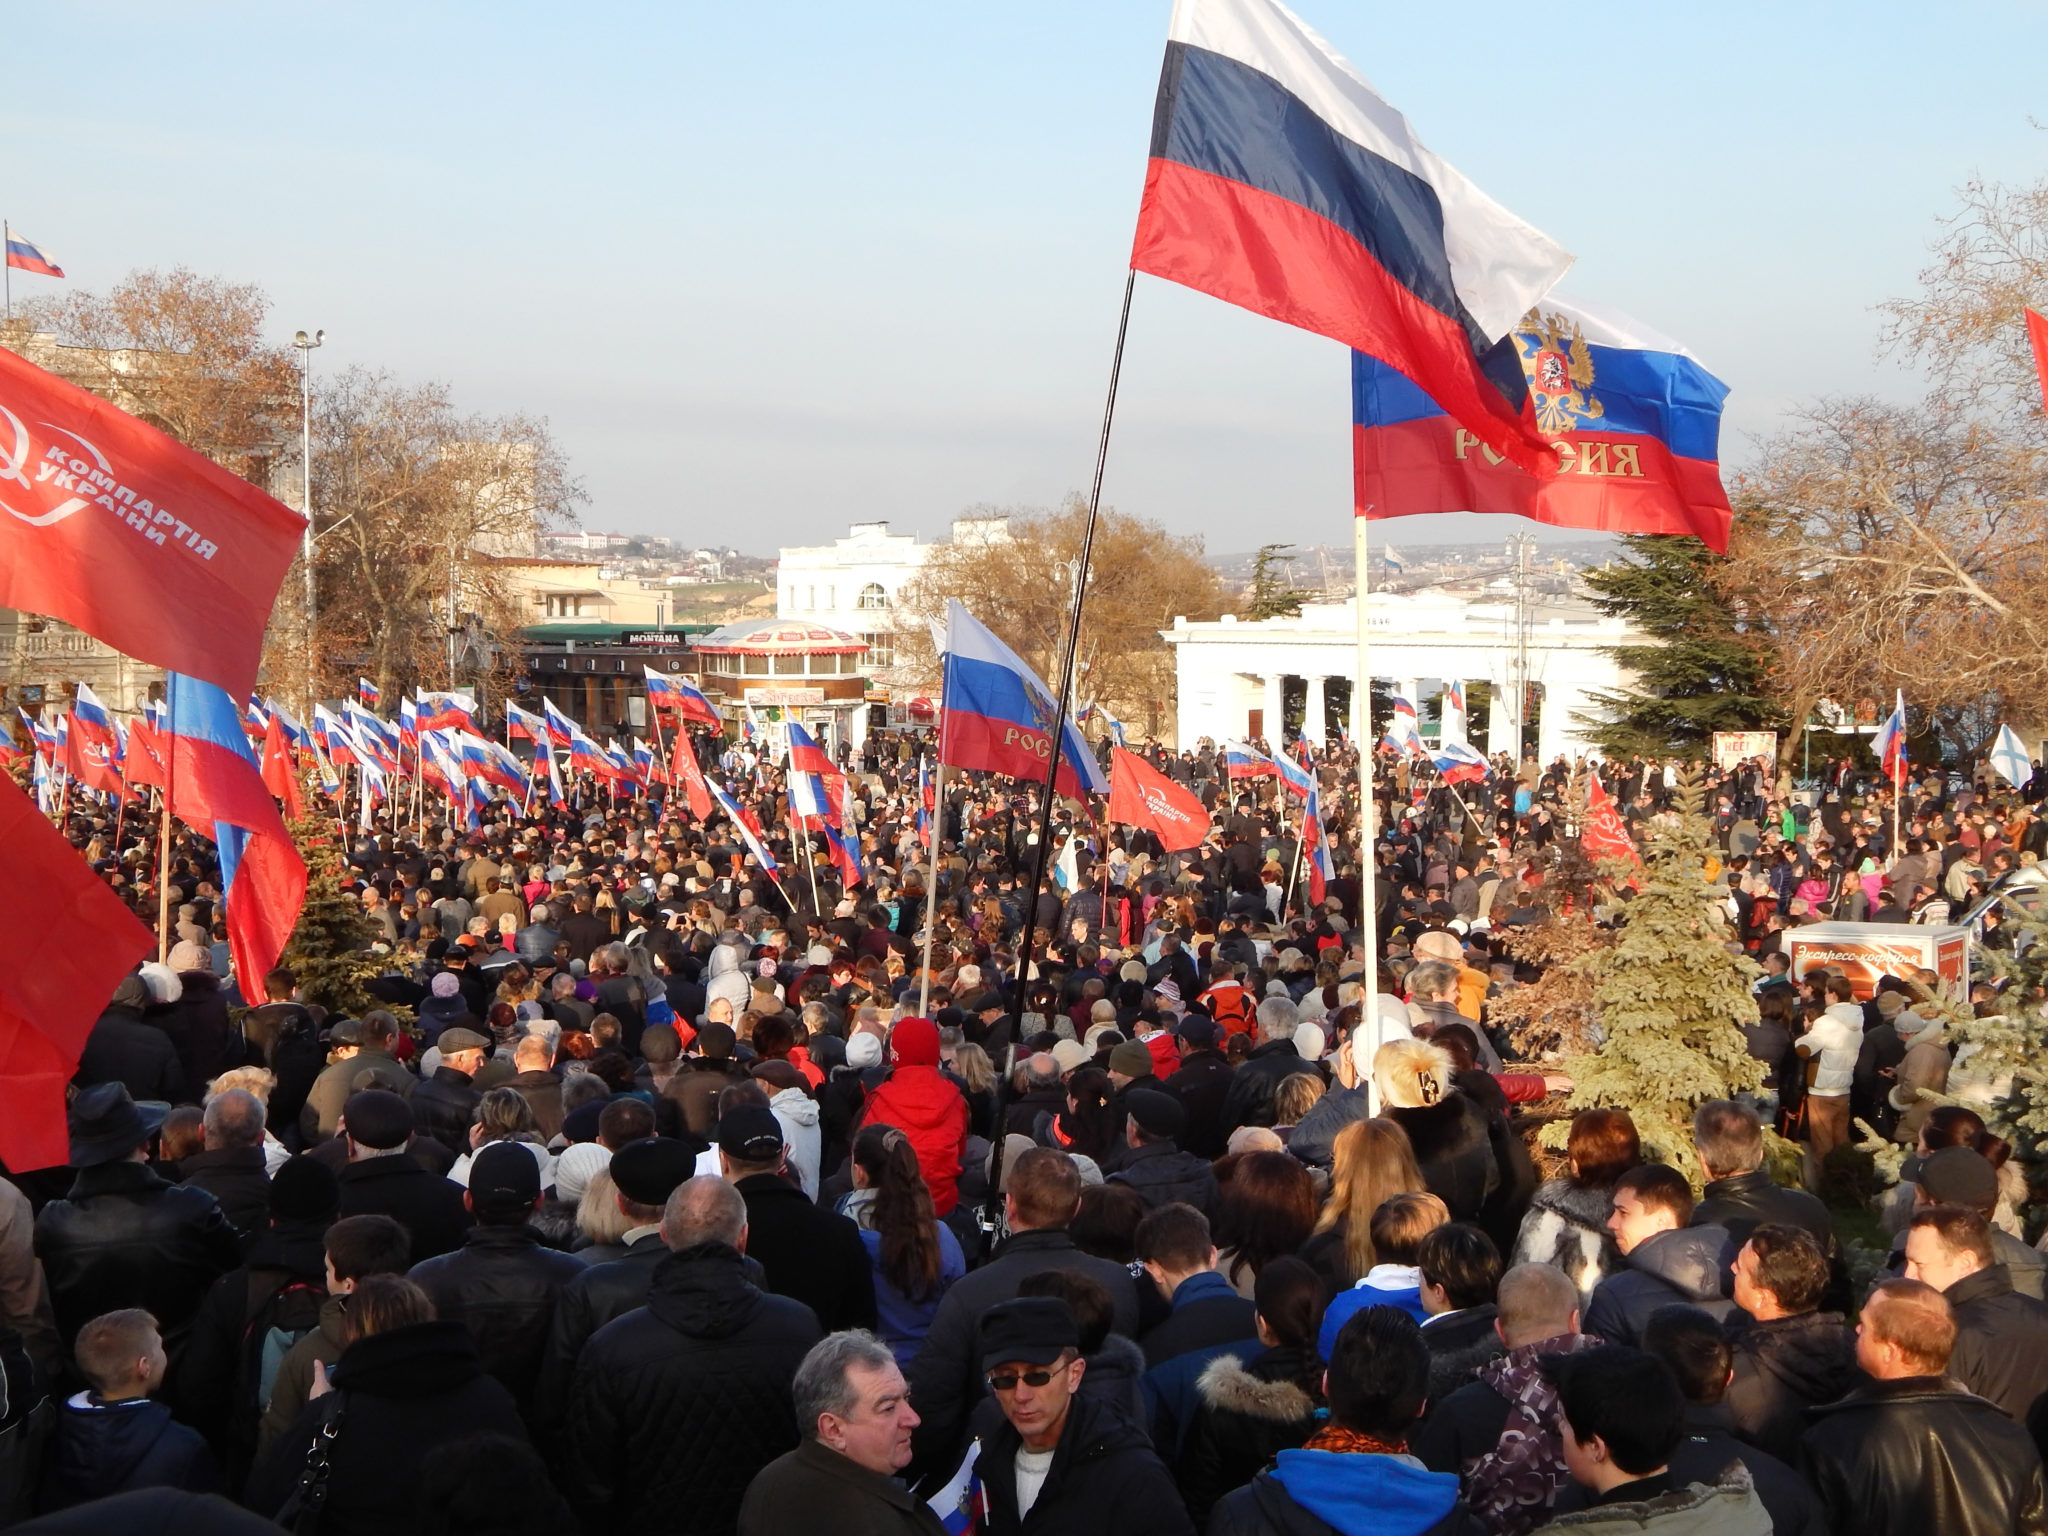 Митинг народной воли севастополь